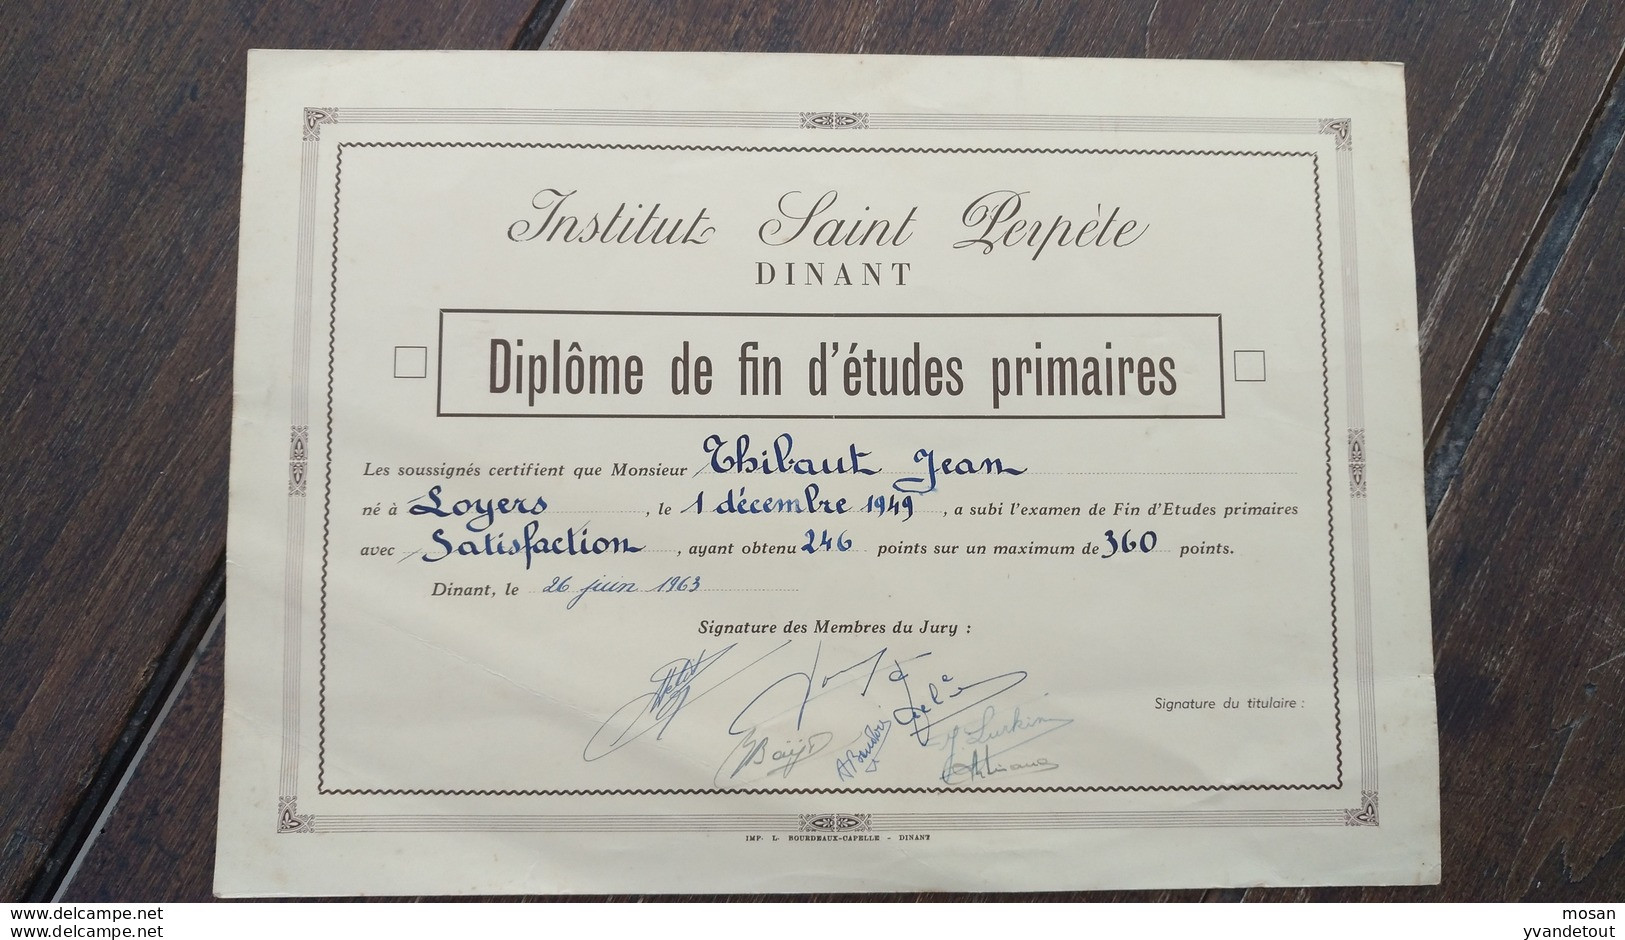 Diplôme De Fin D'études Primaires. Saint Perpète Dinant. 1949 - Diplomi E Pagelle